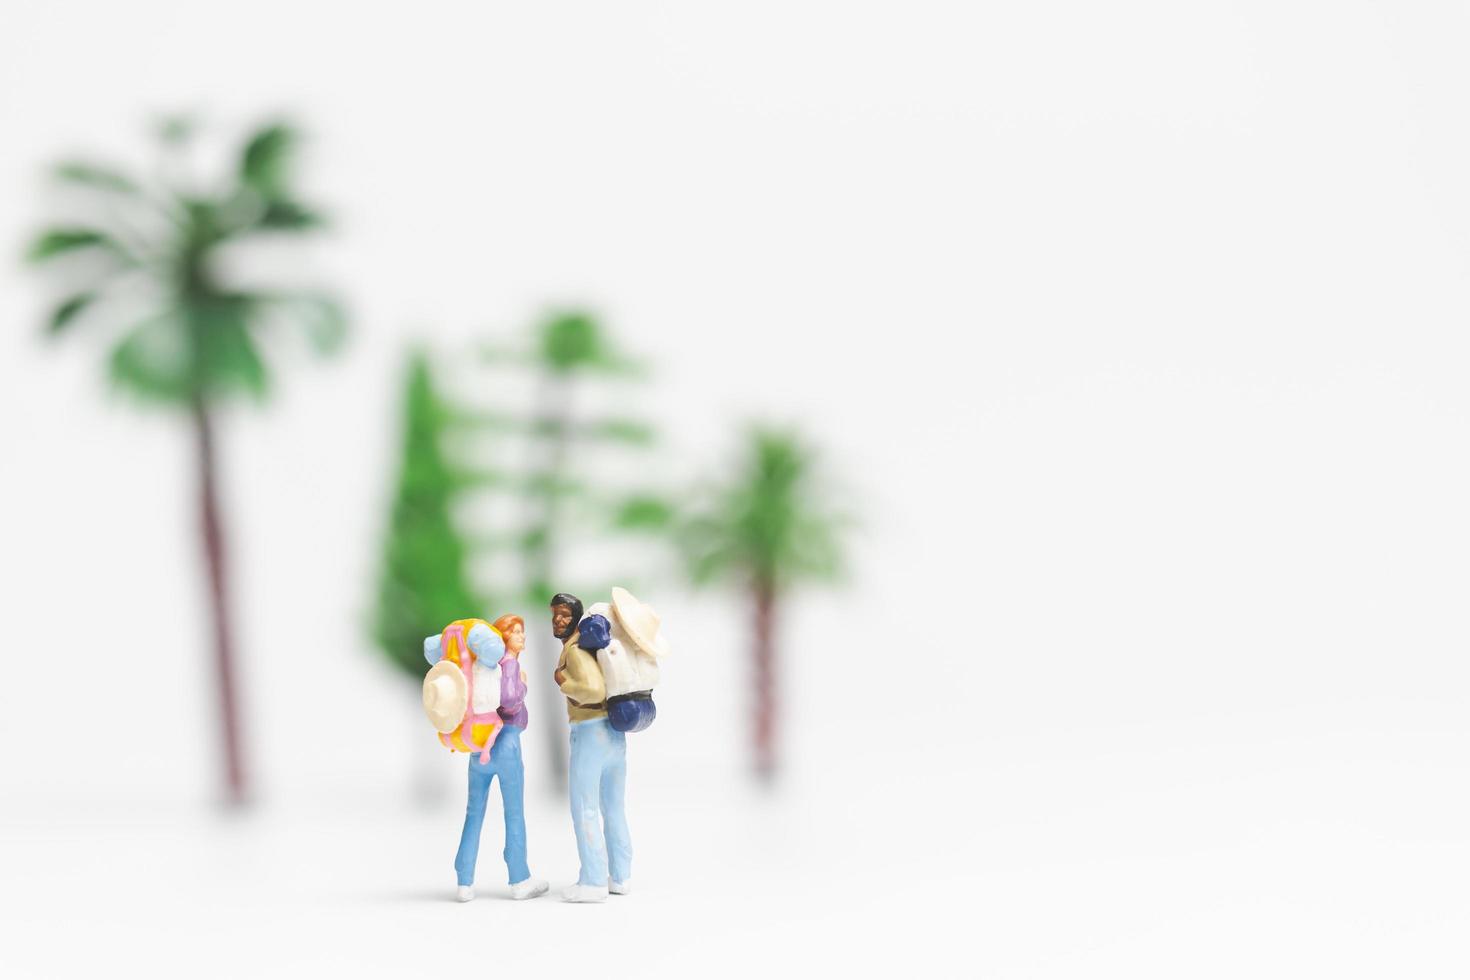 voyageurs miniatures avec sacs à dos marchant sur fond blanc, concept de voyage et d'aventure photo